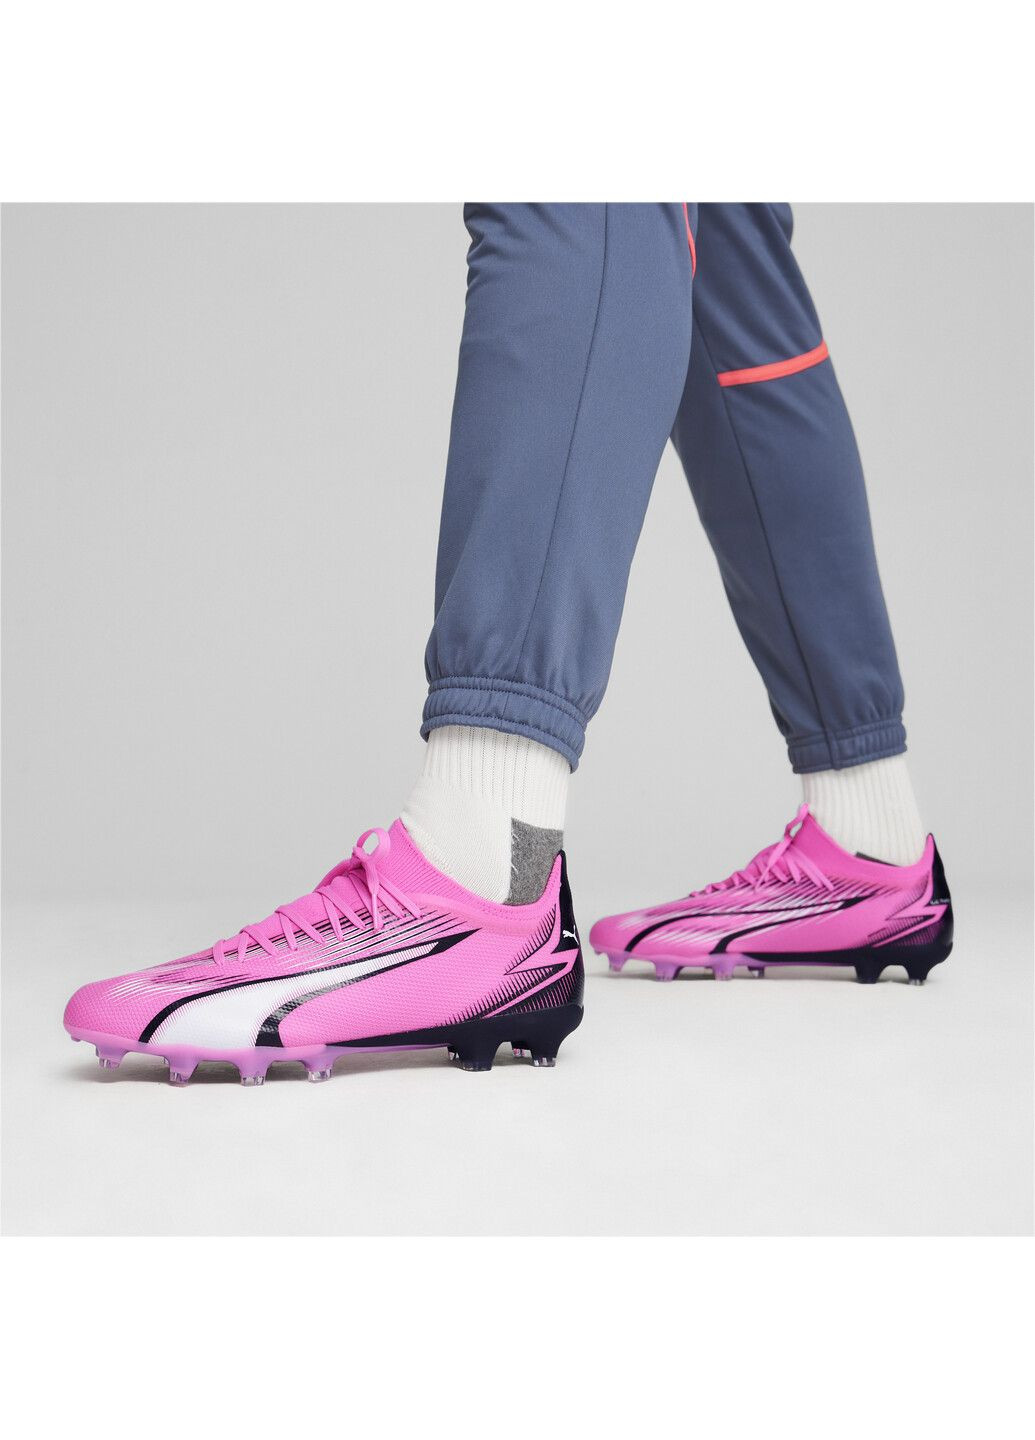 Розовые бутсы ultra match fg/ag football boots Puma